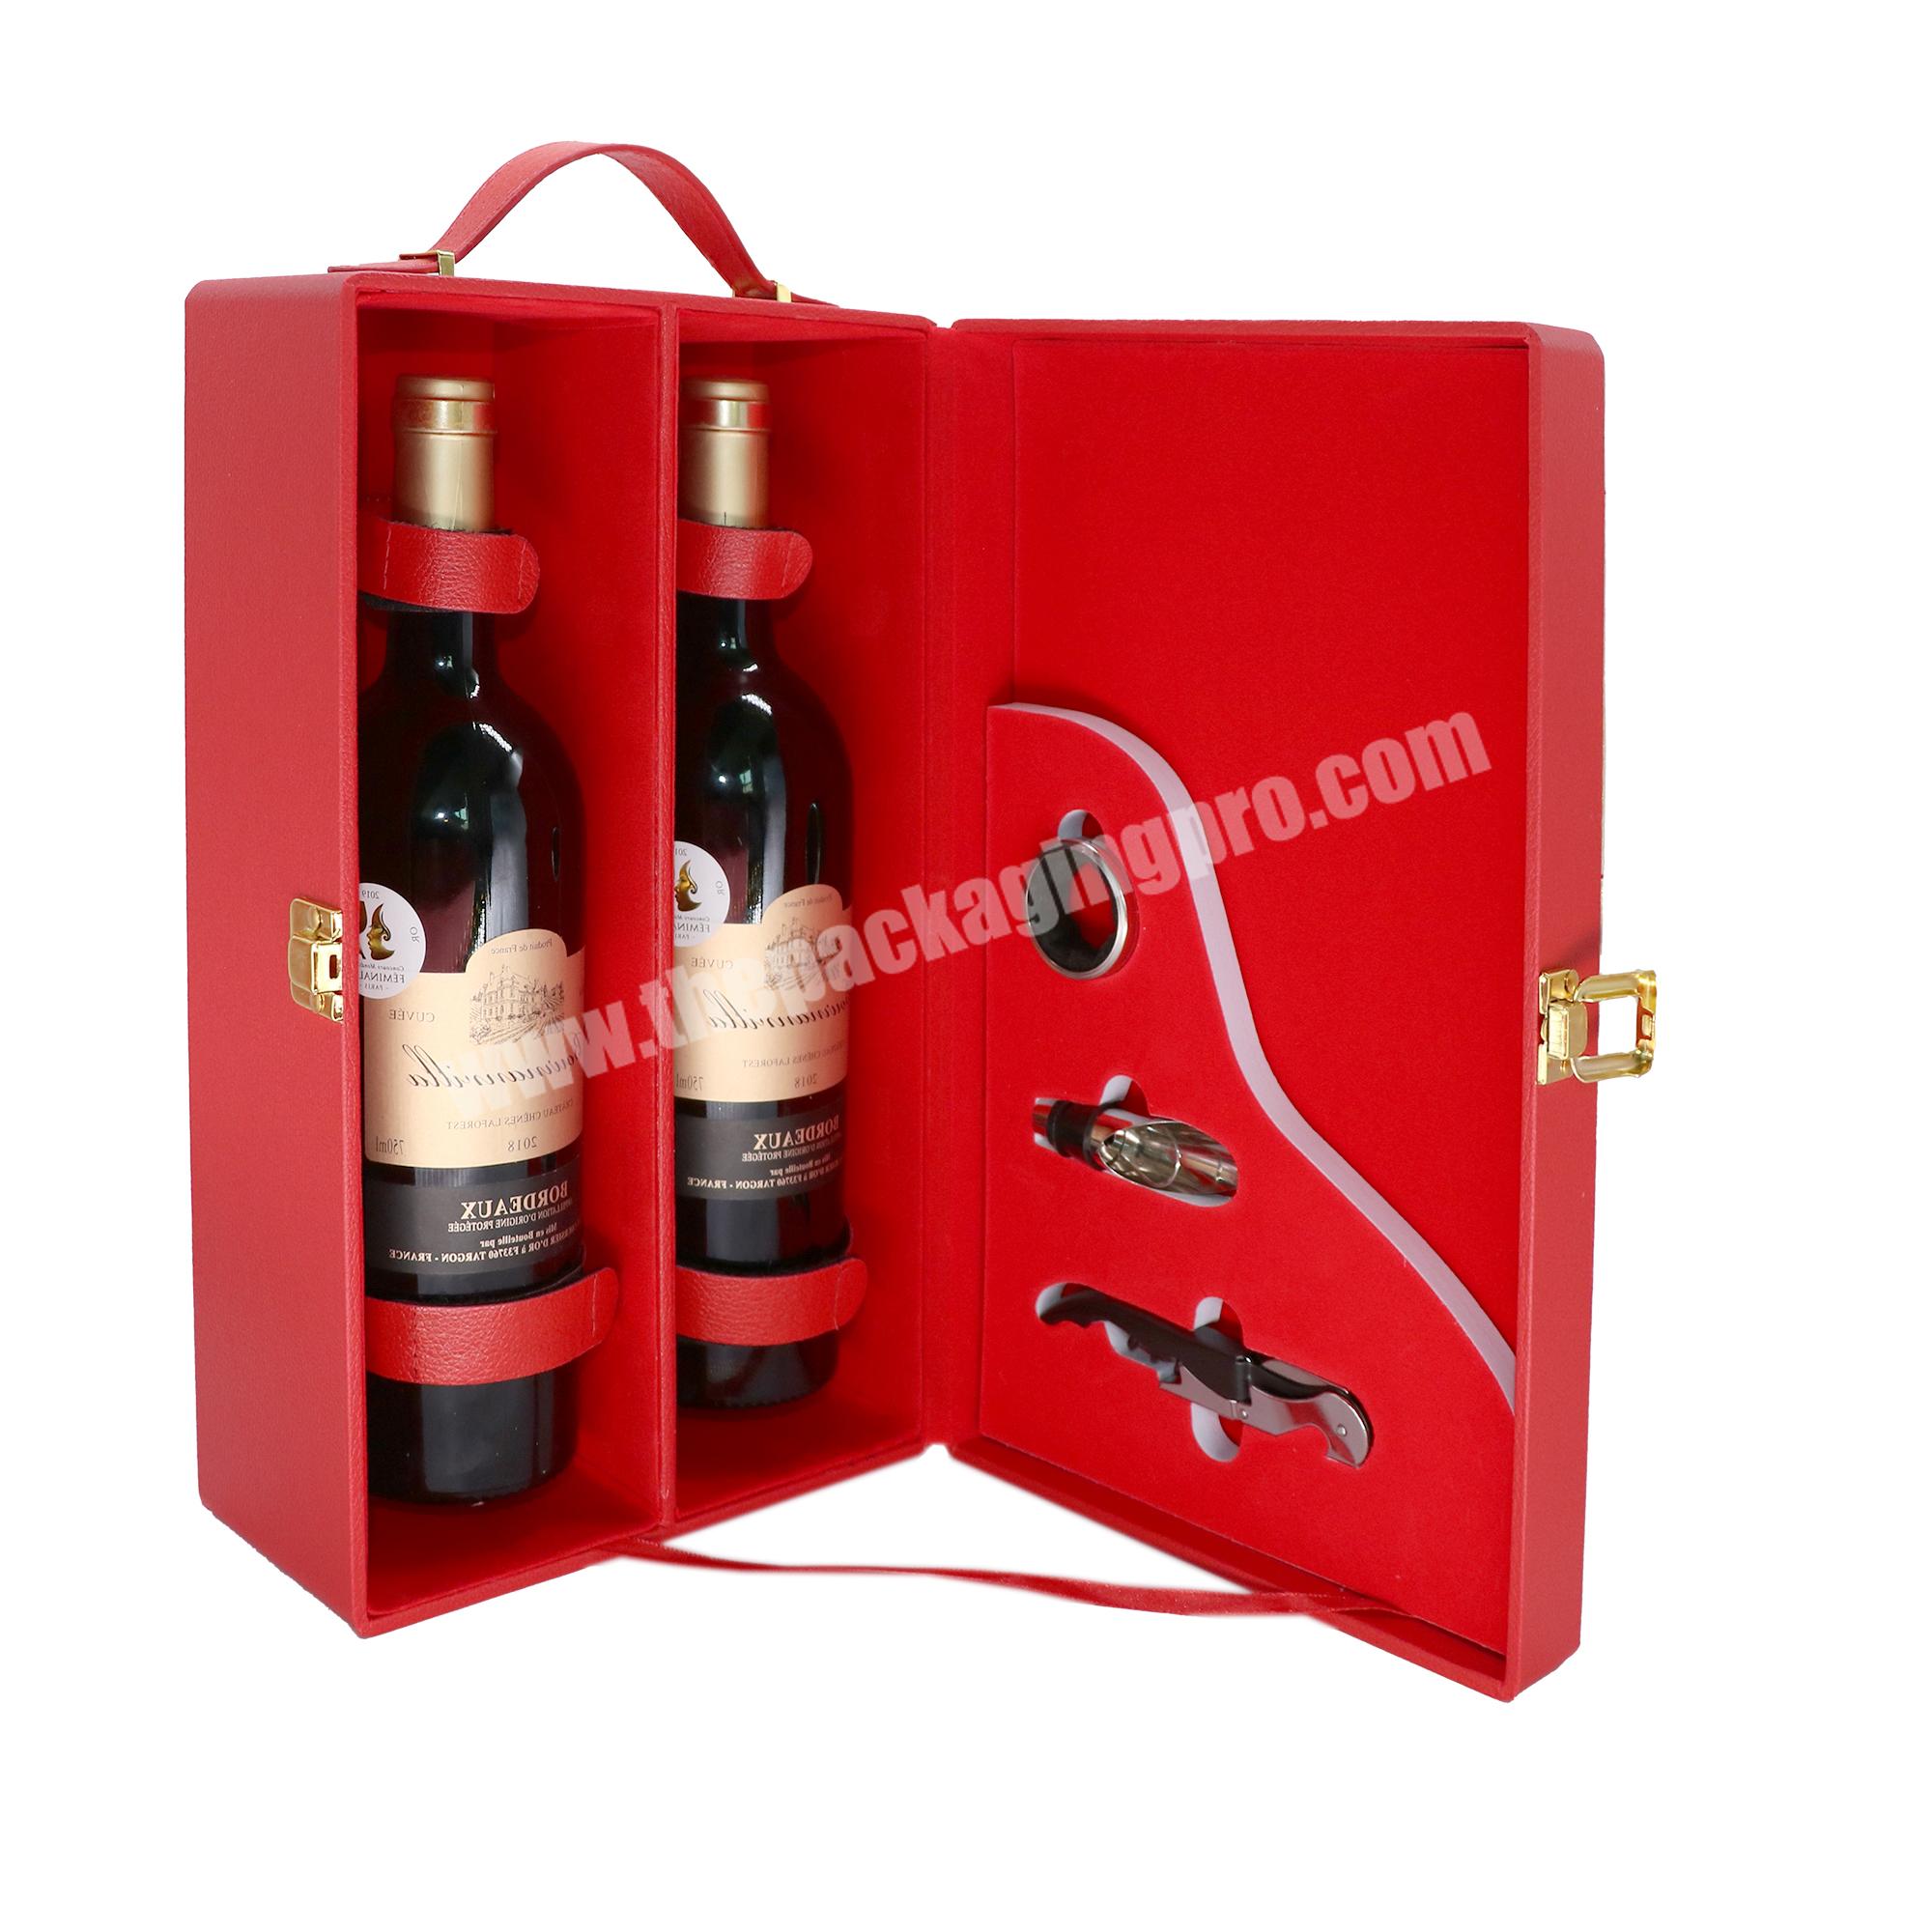 Wholesale wine bottle box 2 bottle wooden wine box custom wine corrugated box